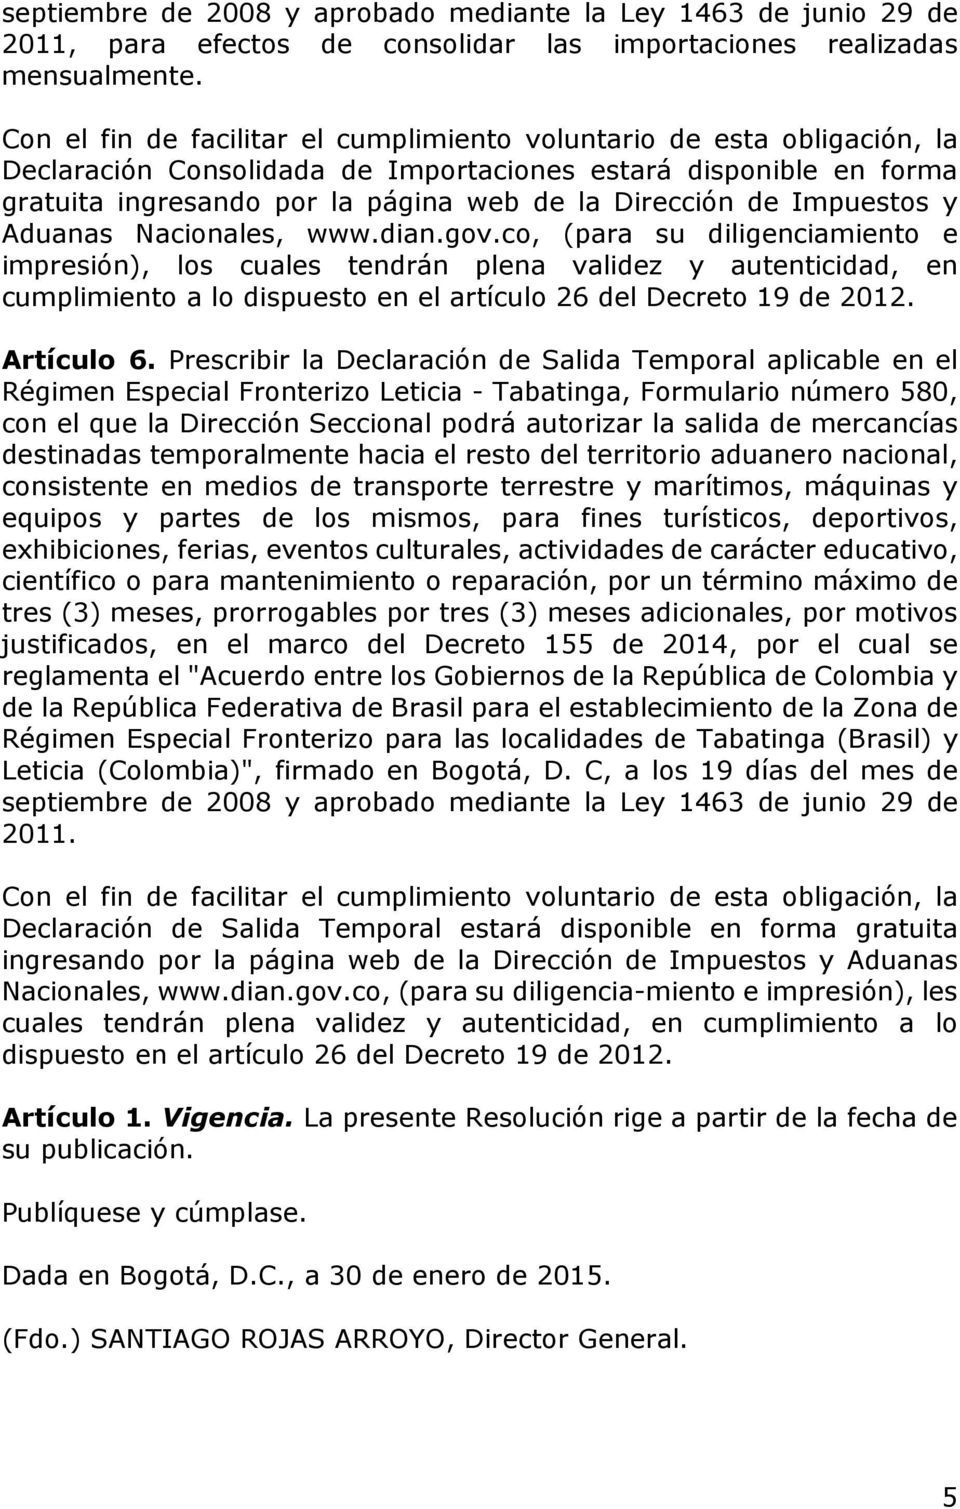 Impuestos y Aduanas Nacionales, www.dian.gov.